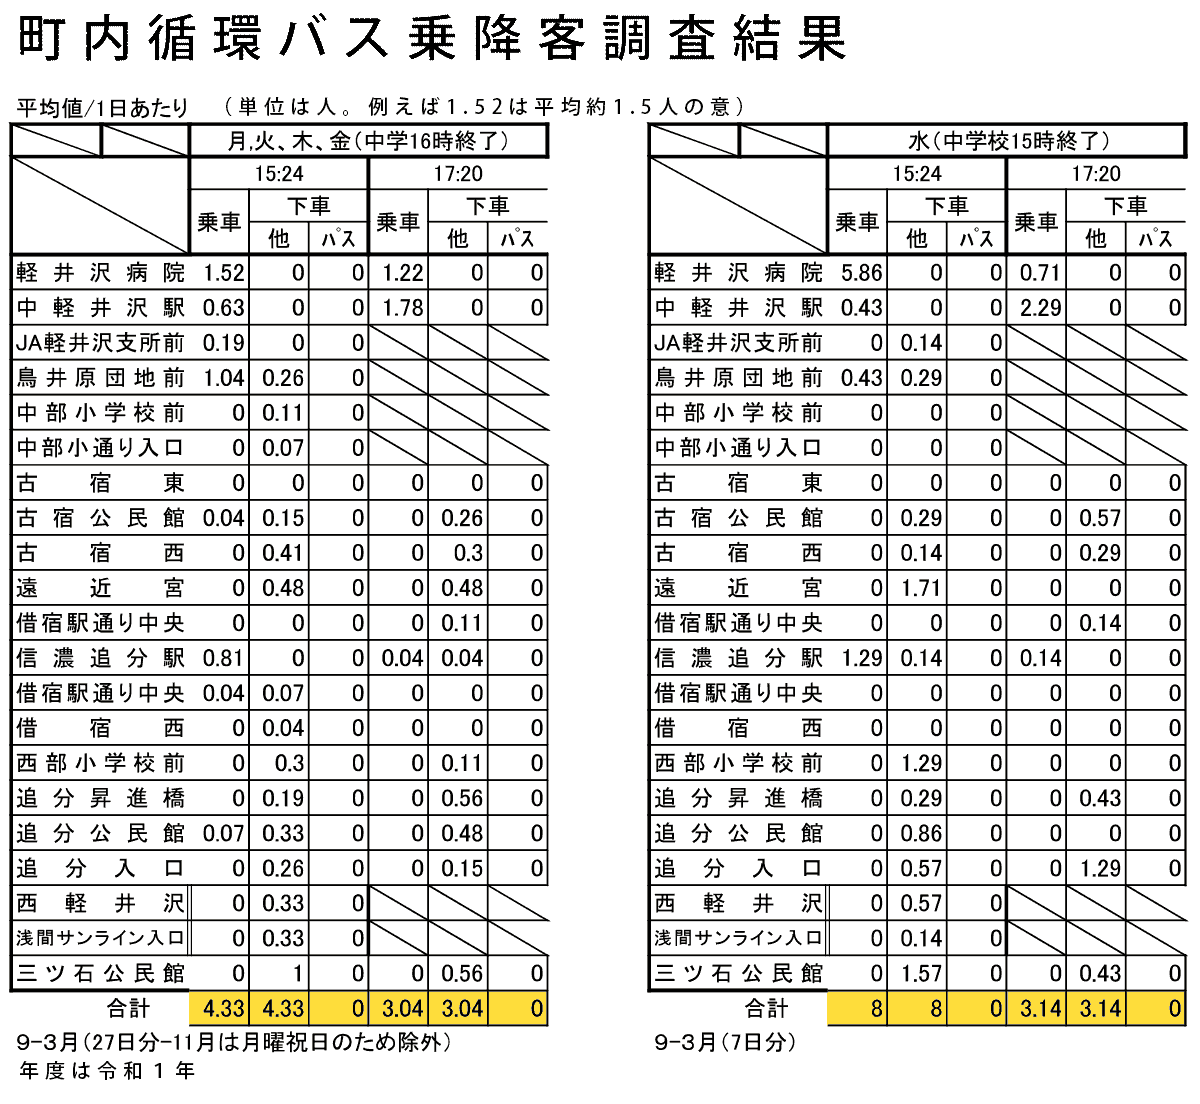 軽井沢町町内循環バス状況客数調査結果表